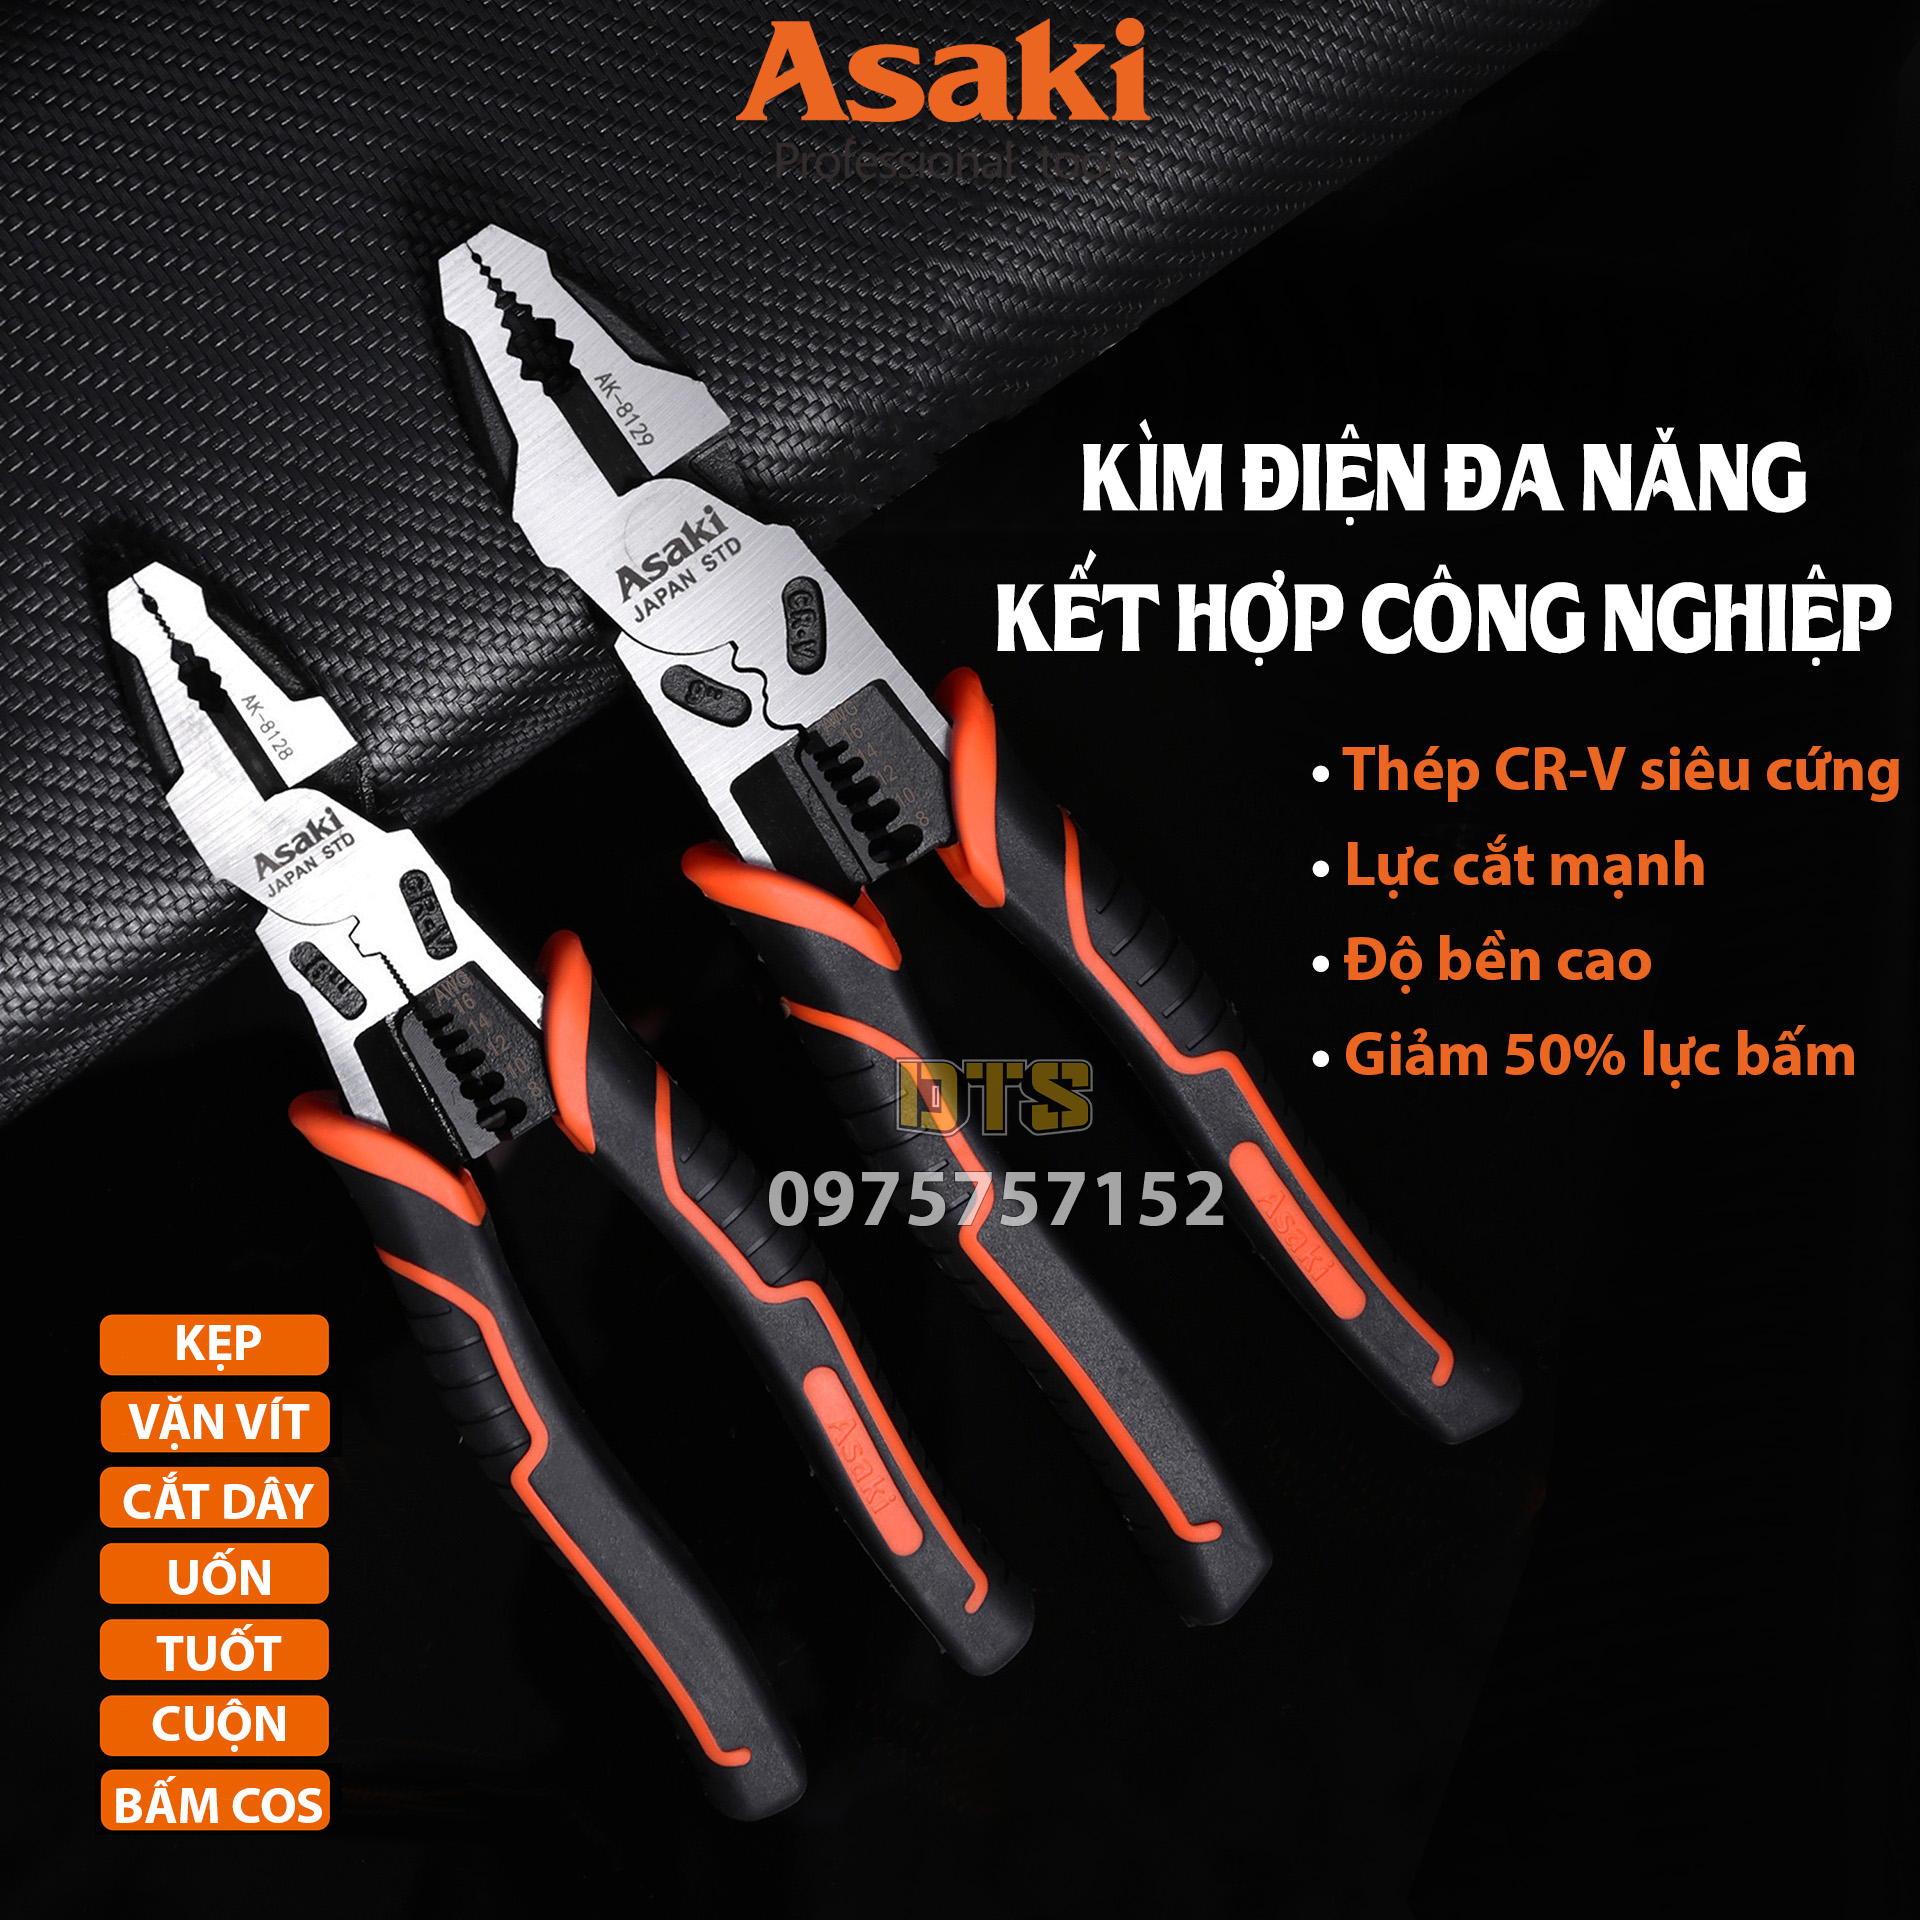 Kìm điện đa năng kết hợp công nghiệp hãng Asaki AK-8129 9 225mm